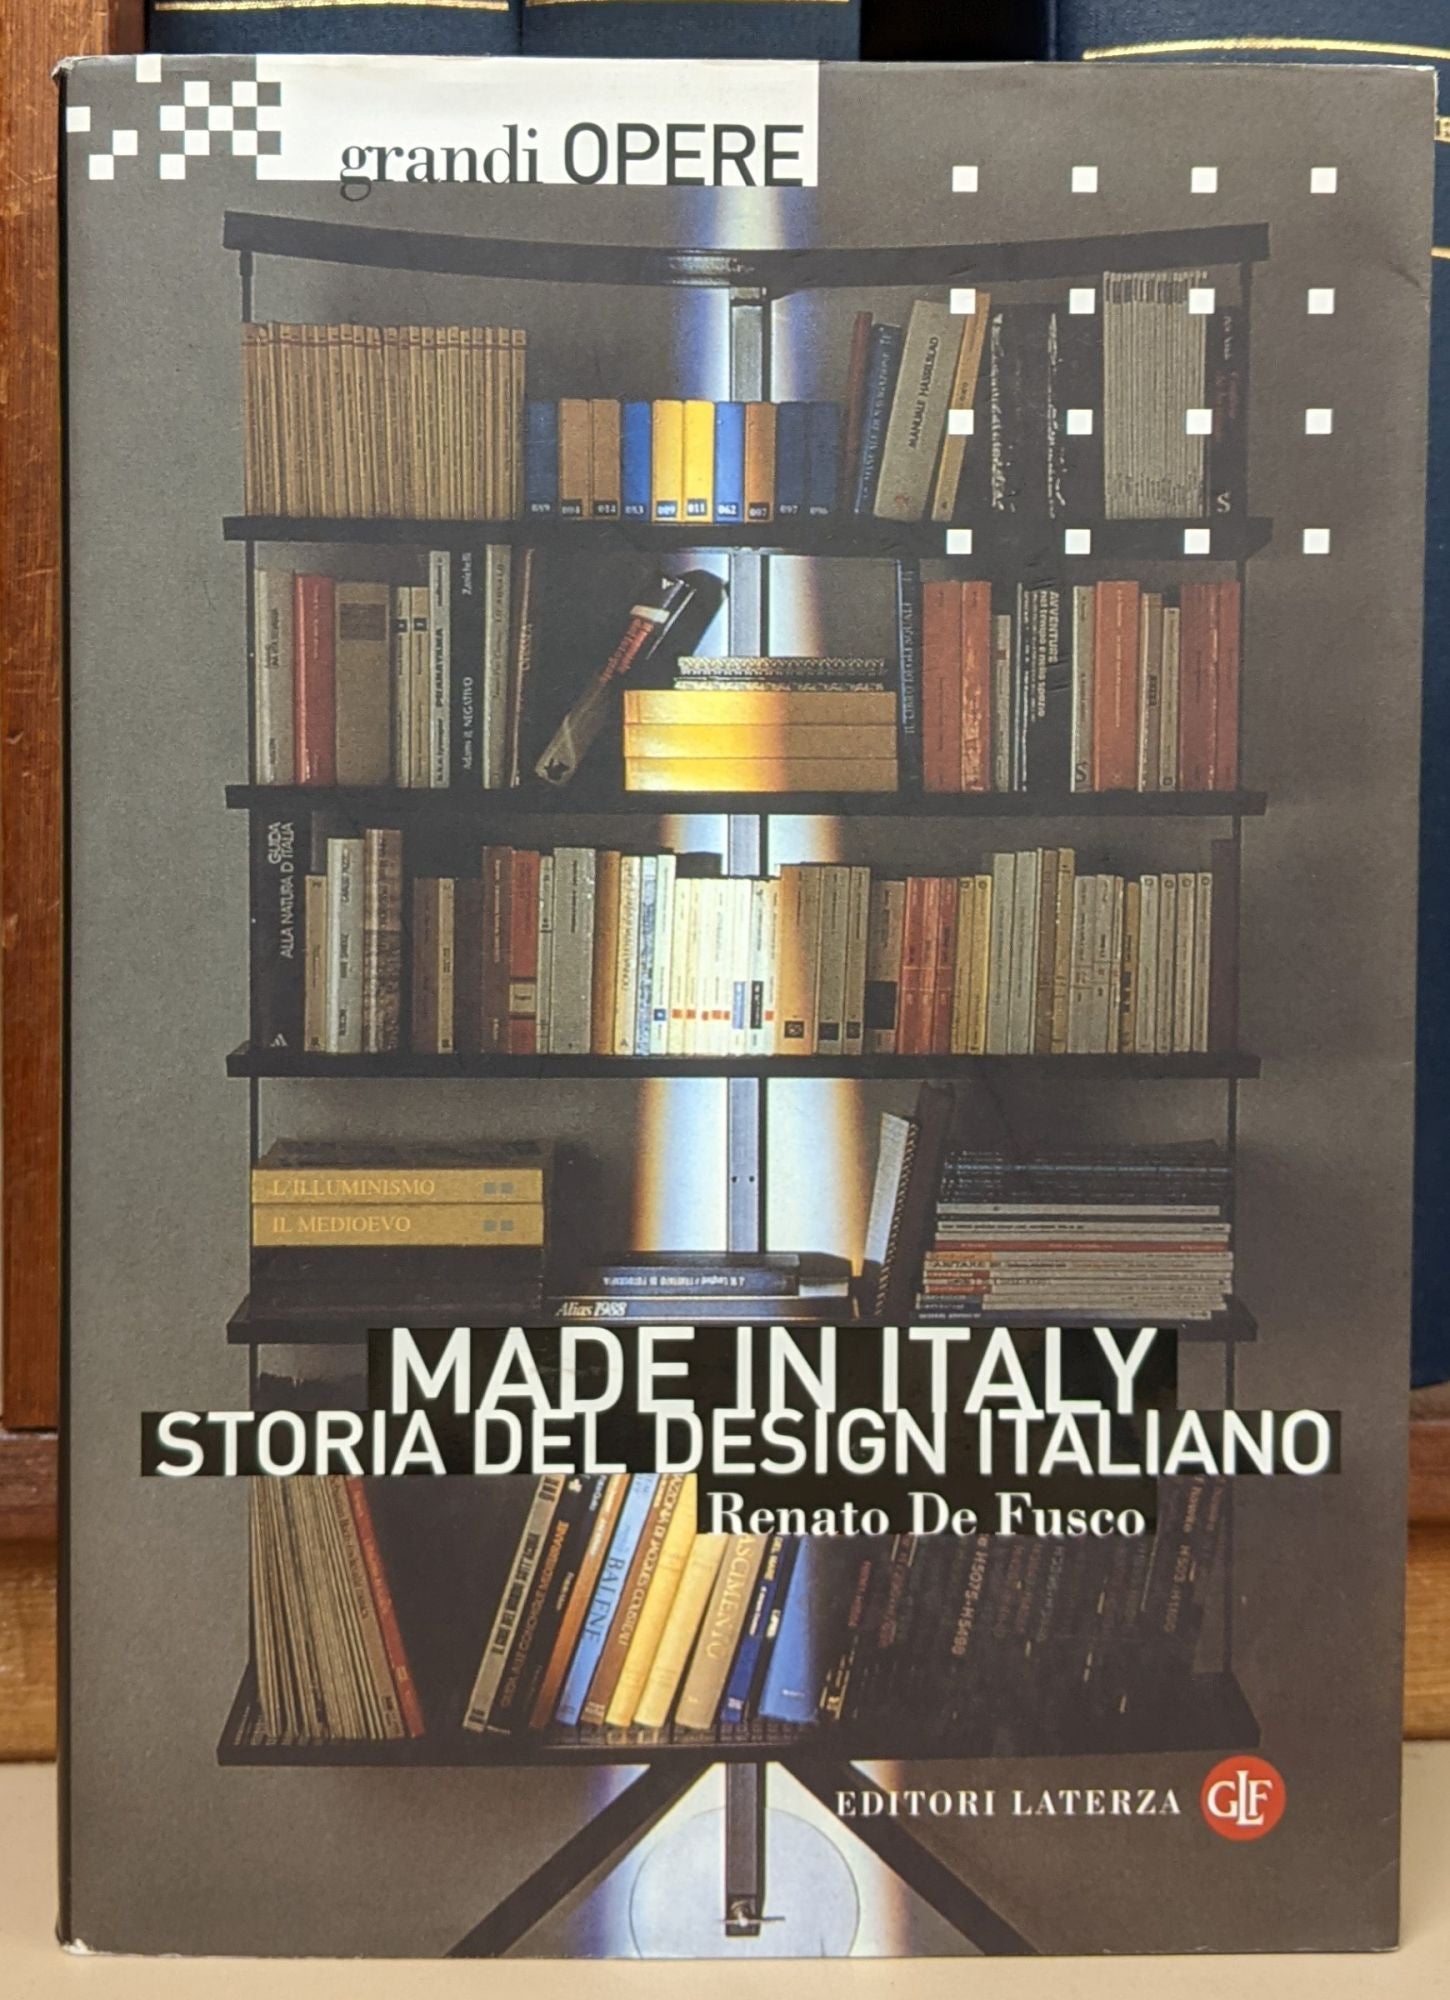 Made in Italy: Storia del Design Italiano by Renato de Fusco on Moe's Books